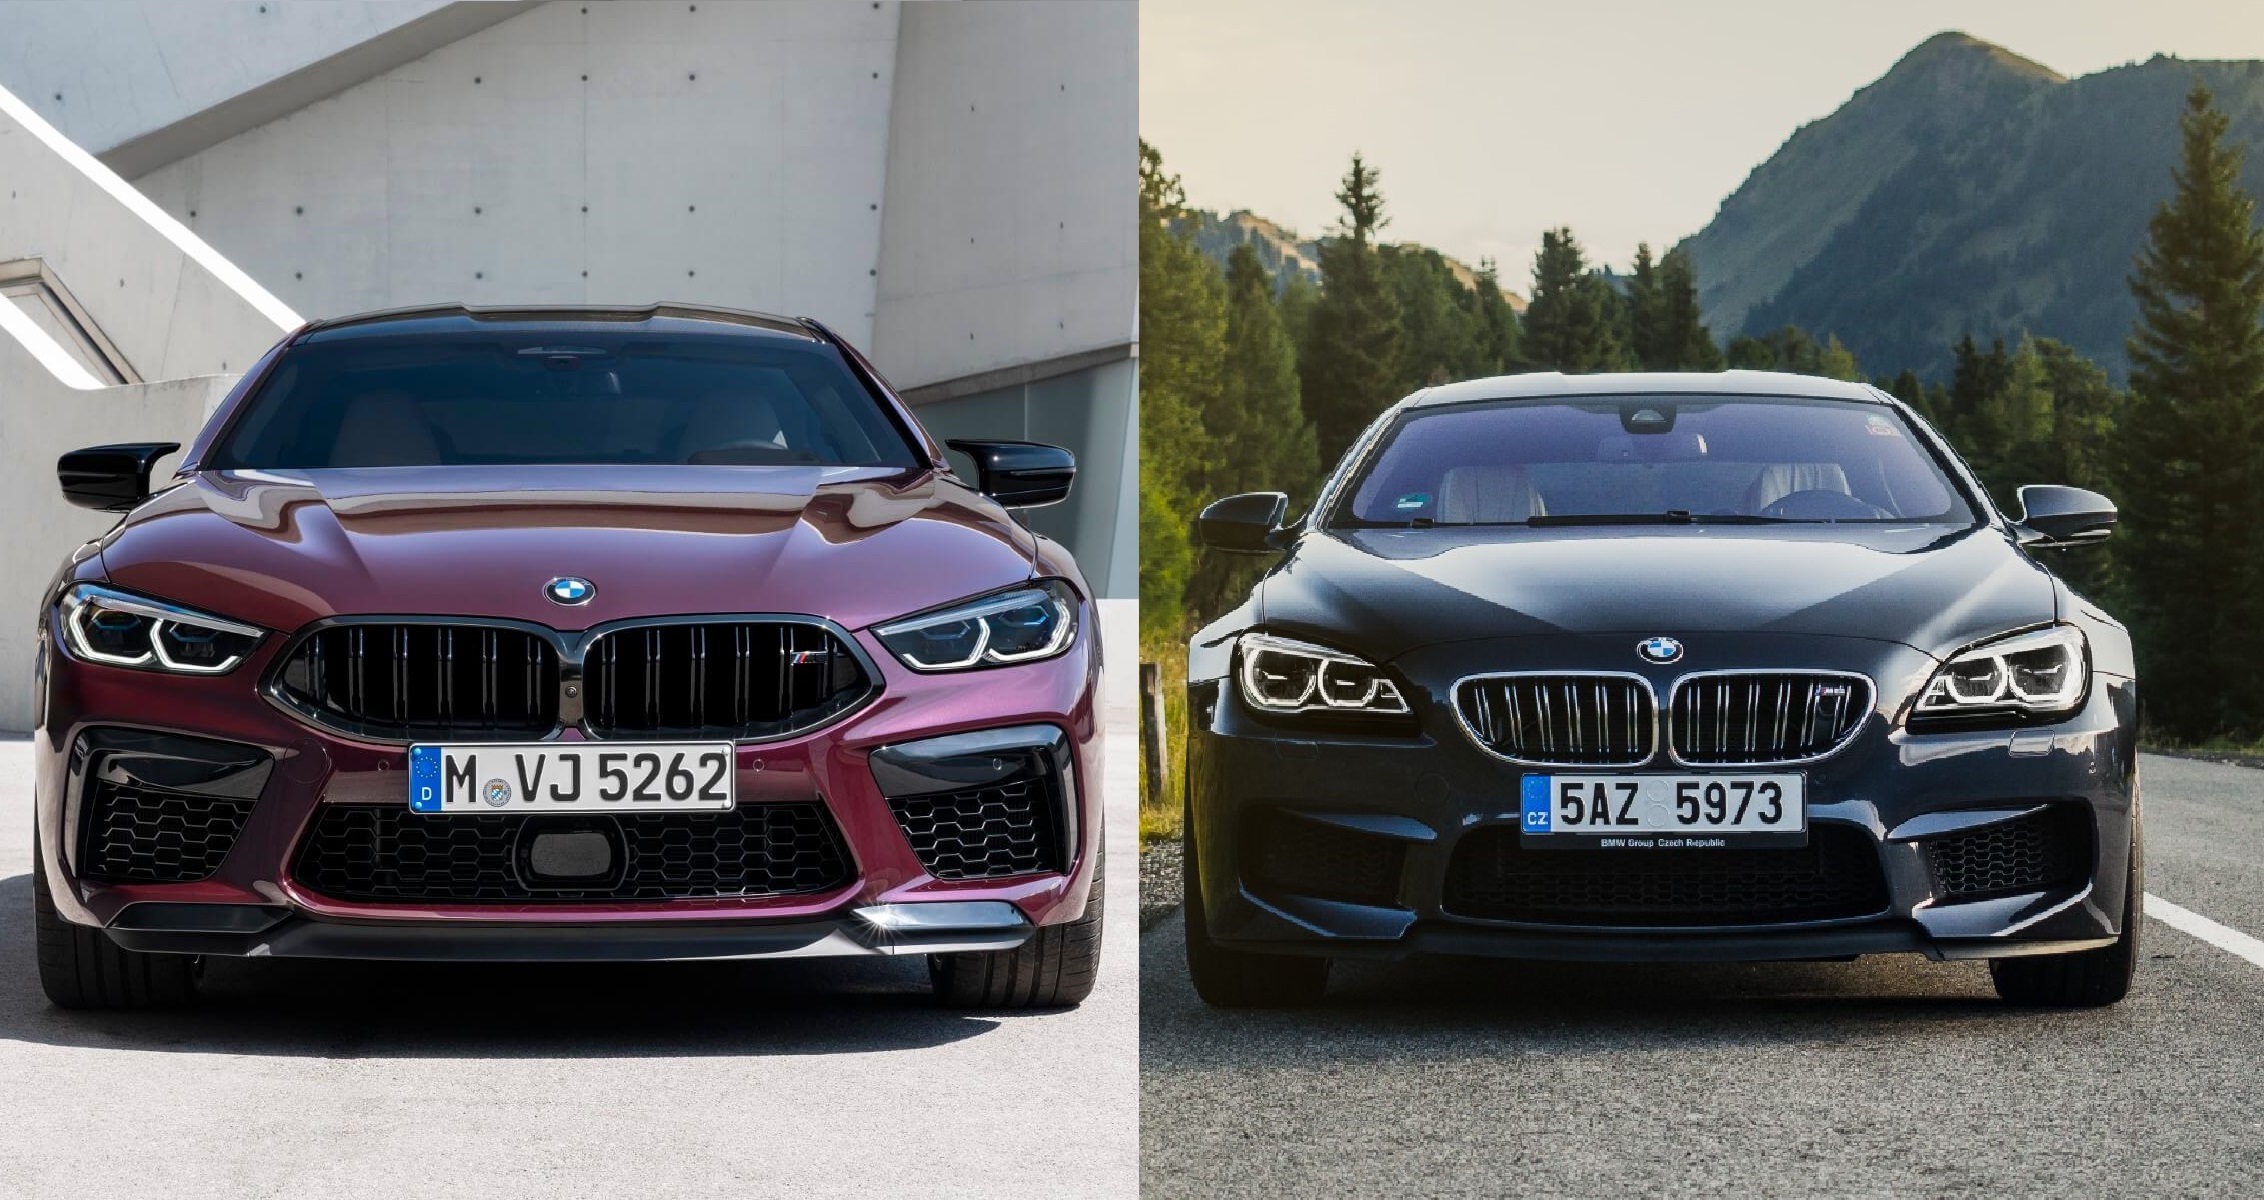 BMW M8 Gran Coupe vs BMW M6 Gran Coupe – kateri je lepši?